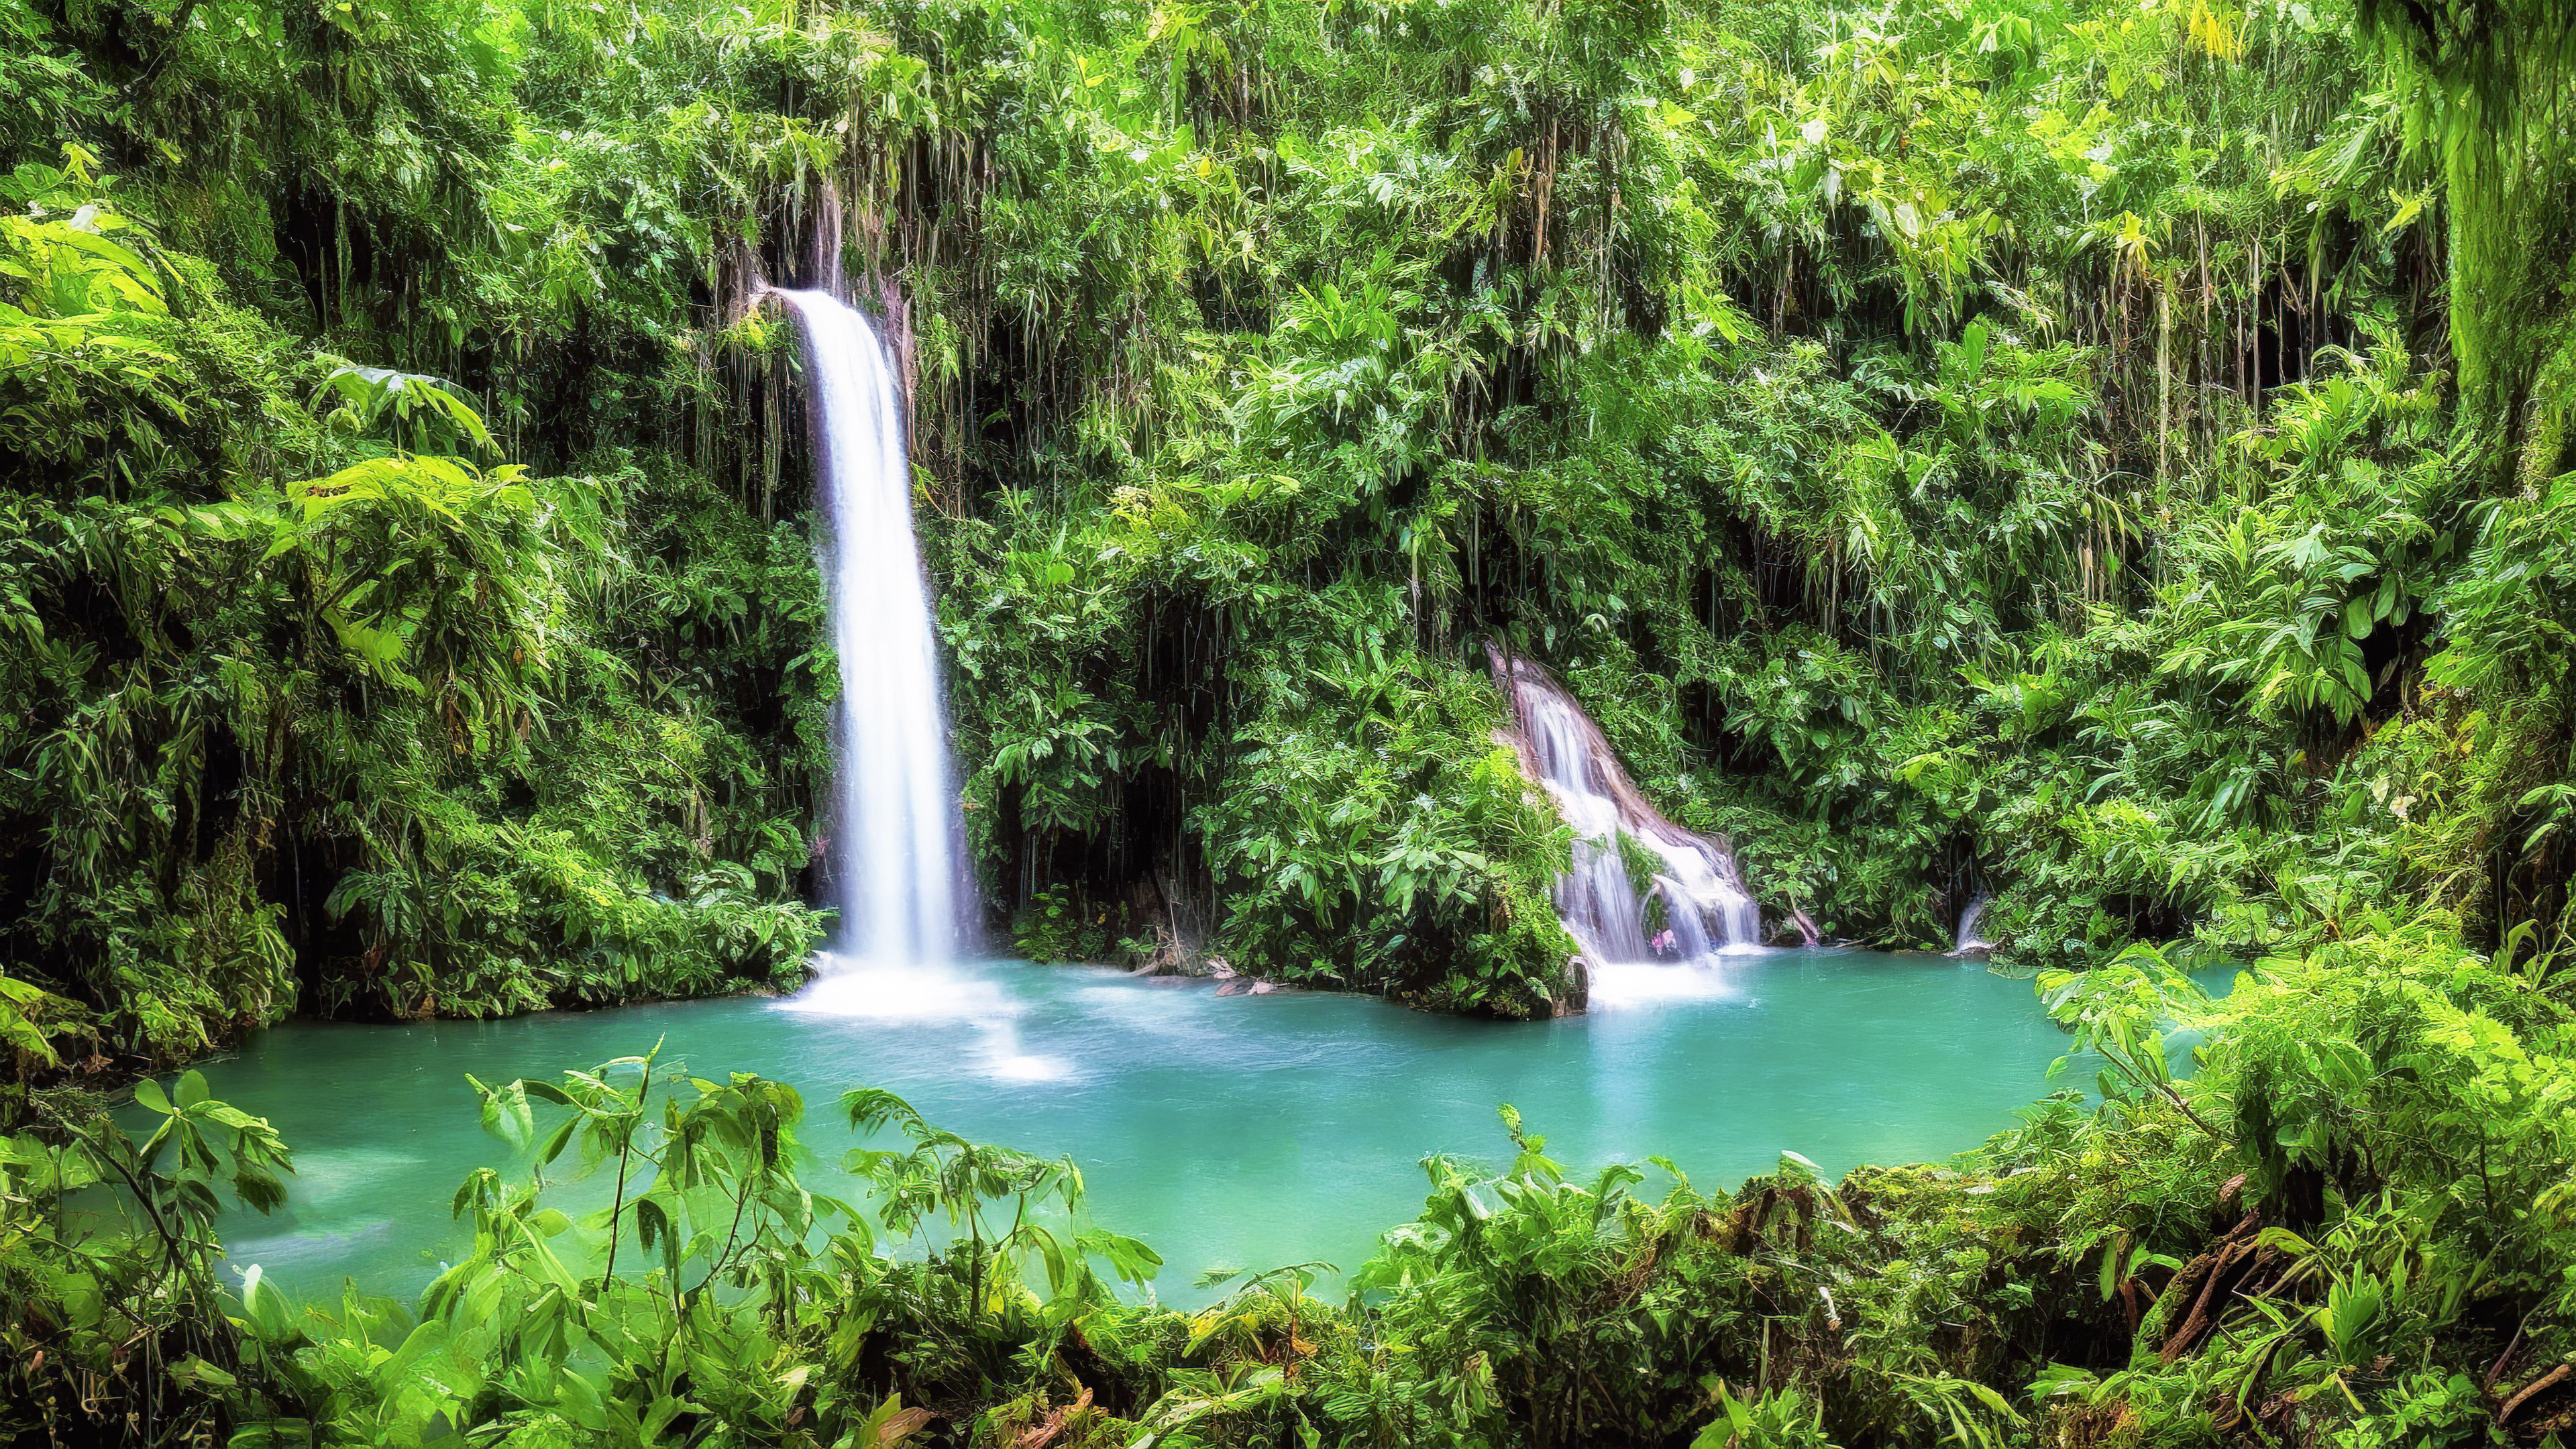 Découvrez l'enchantement de notre fond d'écran de paysage vert, présentant une cascade enchantée cachée profondément dans la forêt tropicale verdoyante.